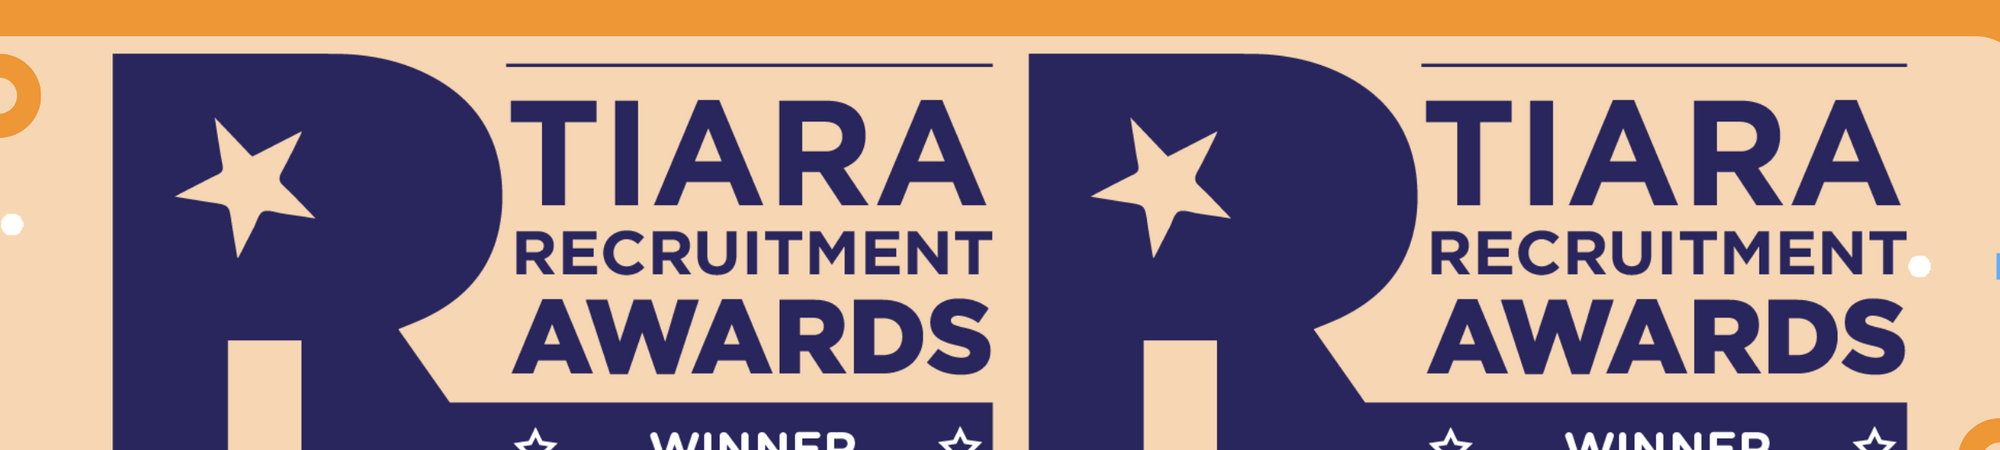 Tiara Recruitment Awards (2)